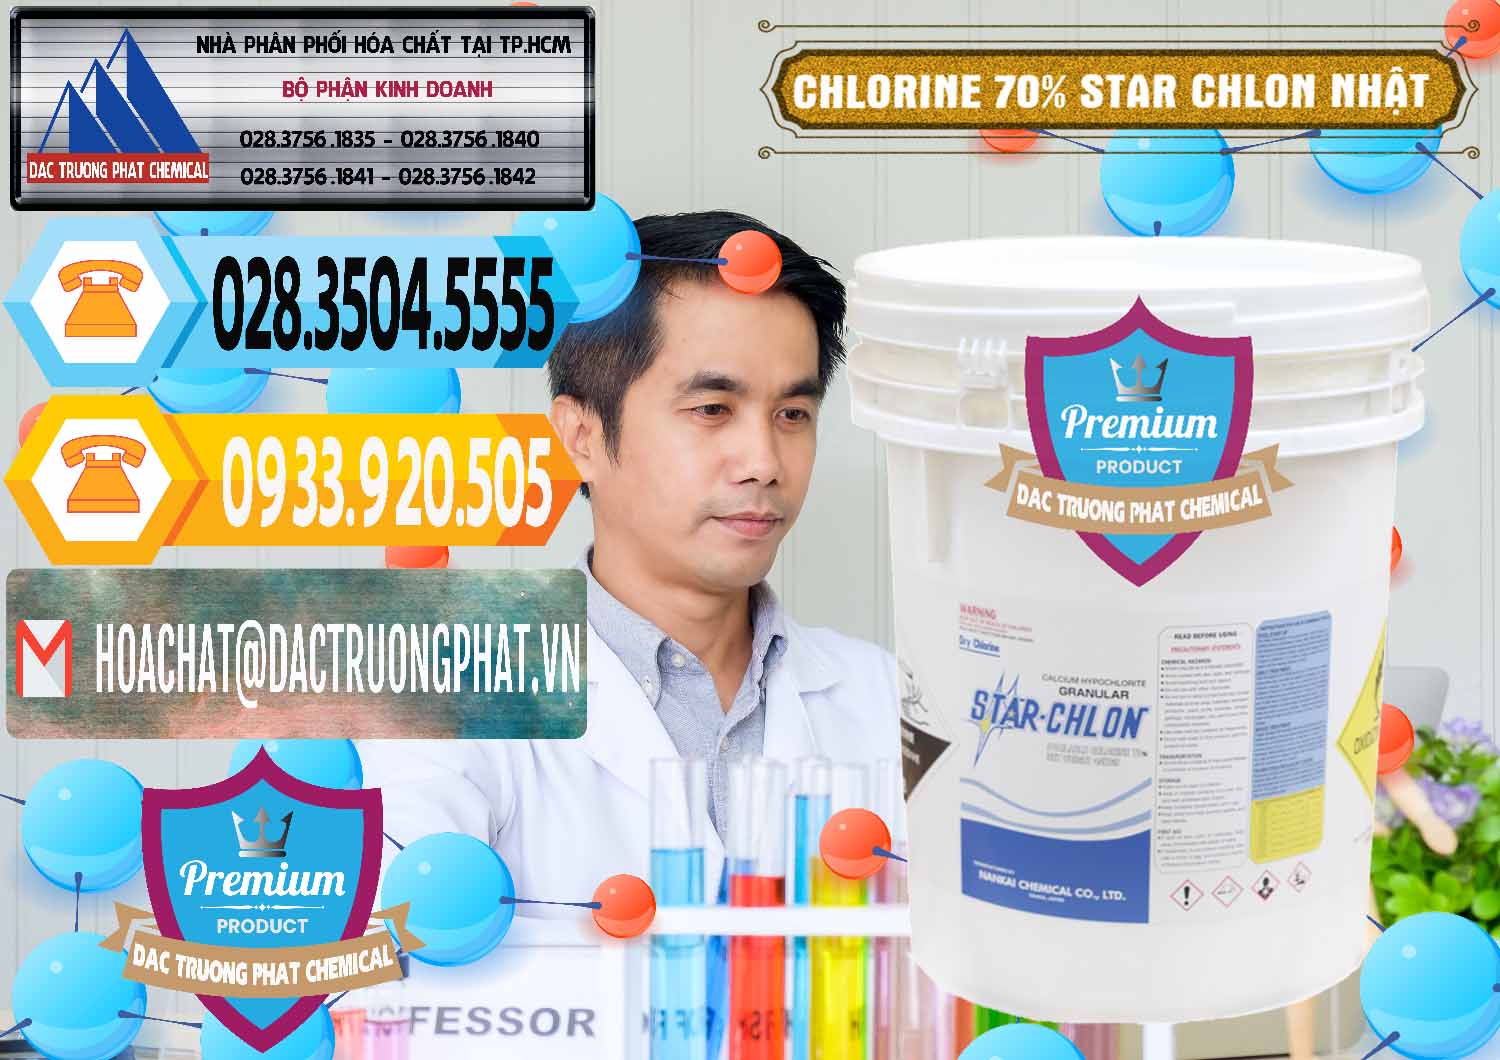 Cty chuyên bán ( phân phối ) Clorin – Chlorine 70% Star Chlon Nhật Bản Japan - 0243 - Cty chuyên kinh doanh ( phân phối ) hóa chất tại TP.HCM - hoachattayrua.net